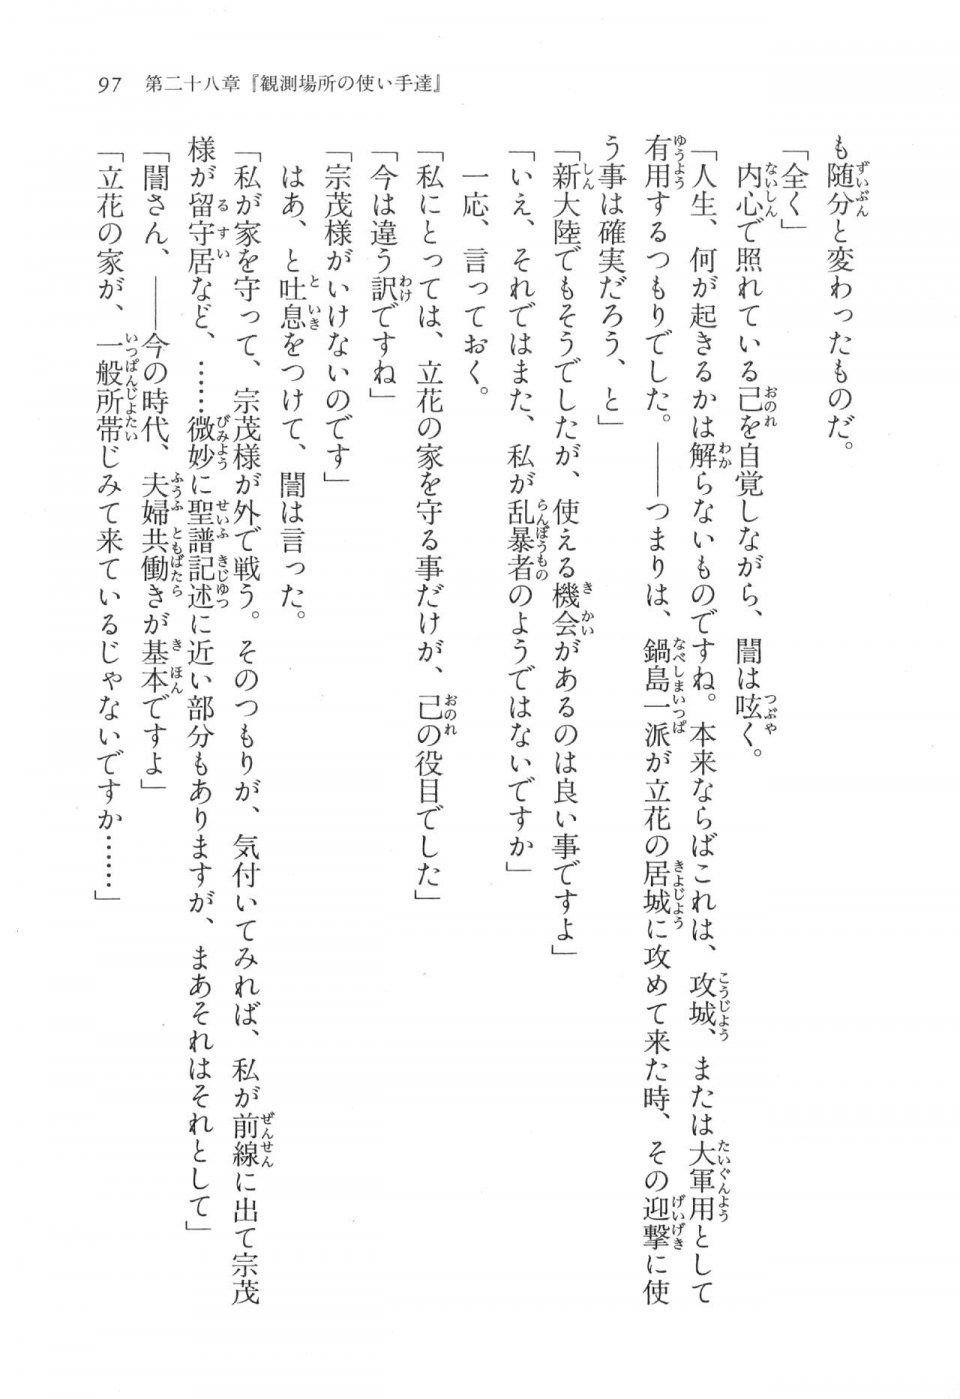 Kyoukai Senjou no Horizon LN Vol 17(7B) - Photo #97